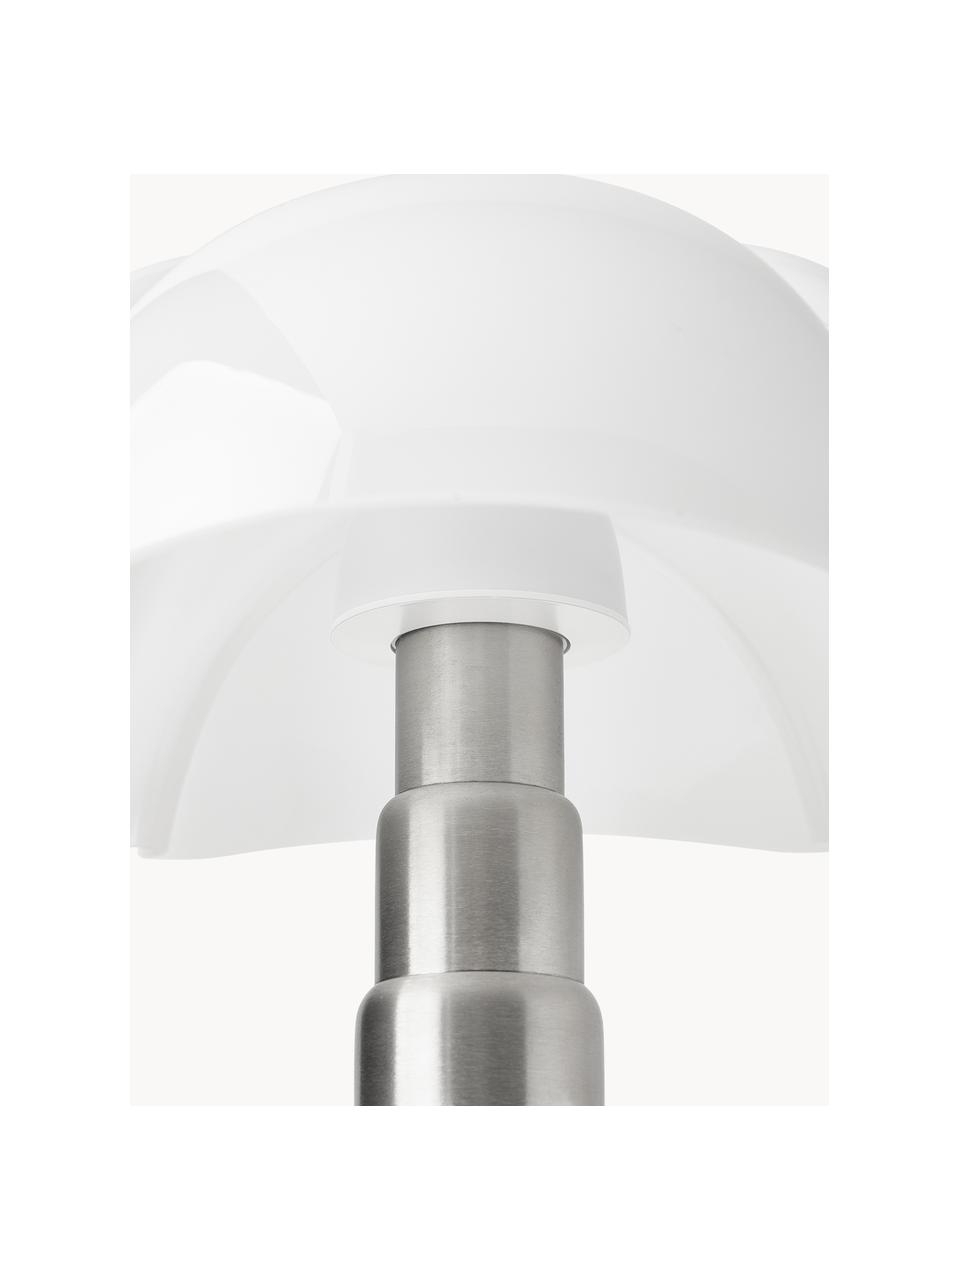 Lampa stołowa LED z funkcją przyciemniania Pipistrello, Stelaż: metal, aluminium, lakiero, Czarny, matowy, Ø 40 x W 50 cm